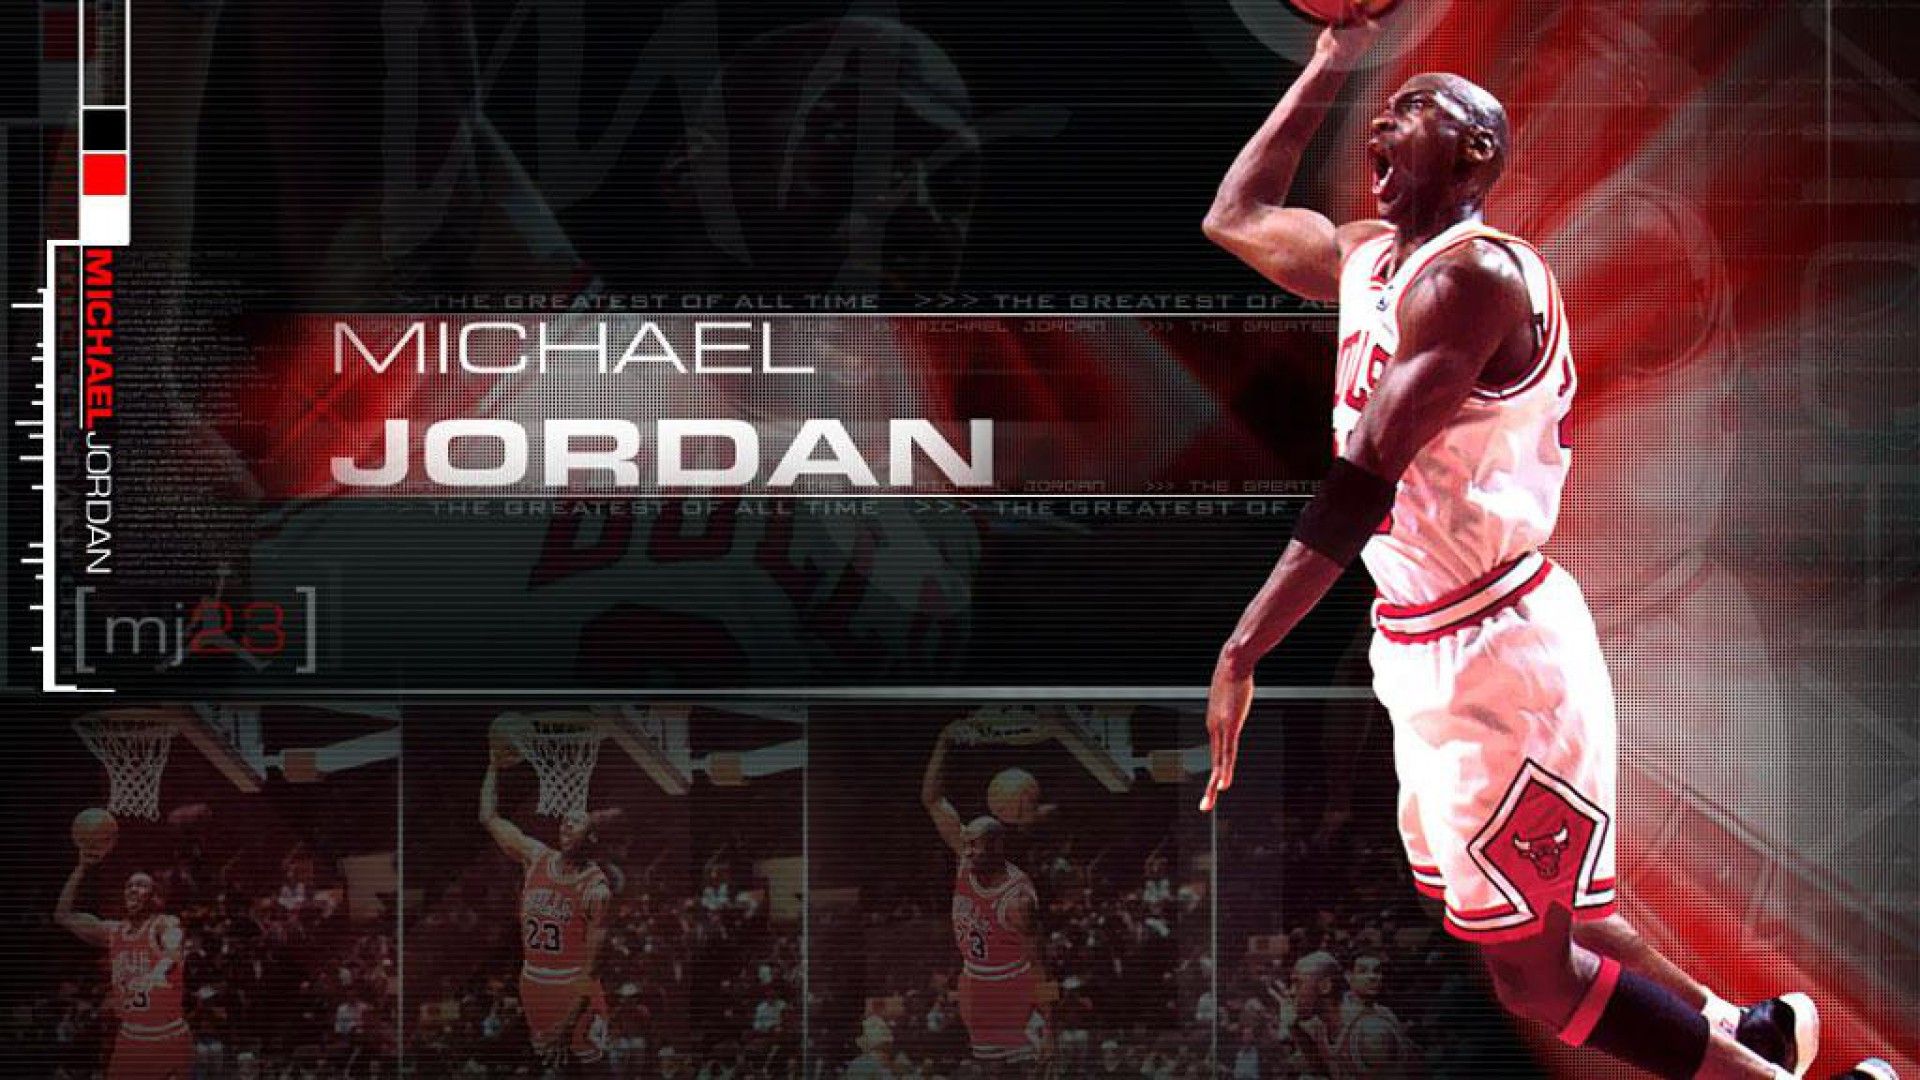 Michael Jordan Wallpaper HD Image HDimges